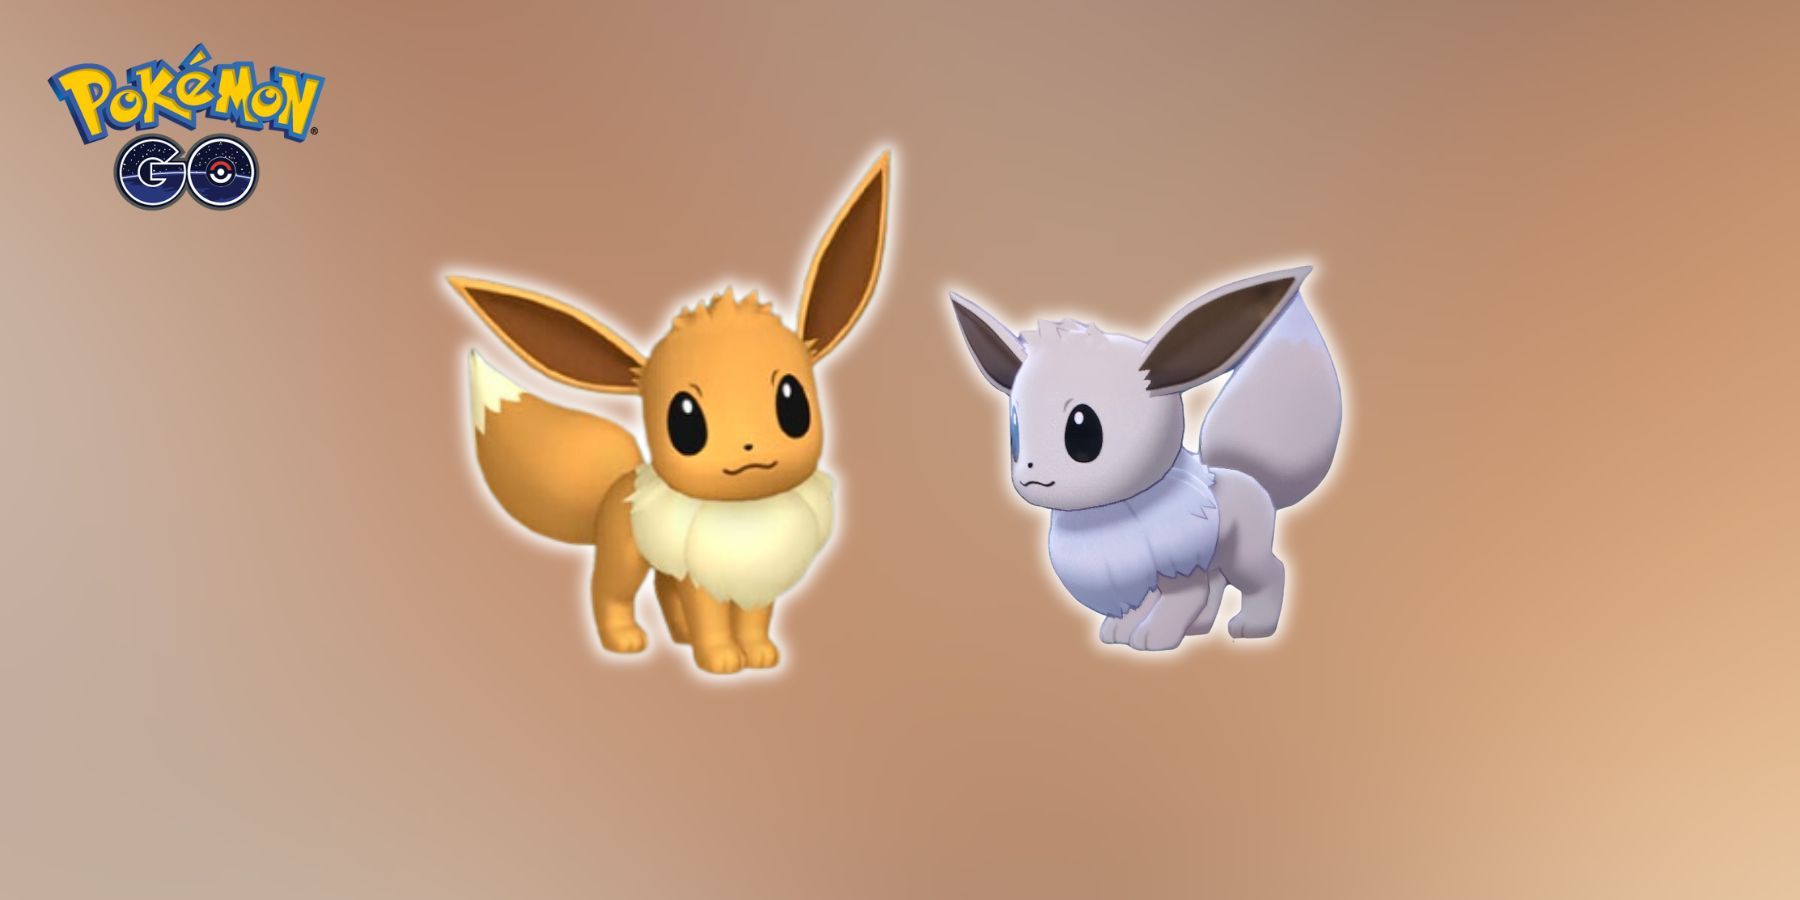 Eevee and Shiny Eevee Spotlight Hour in Pokemon GO